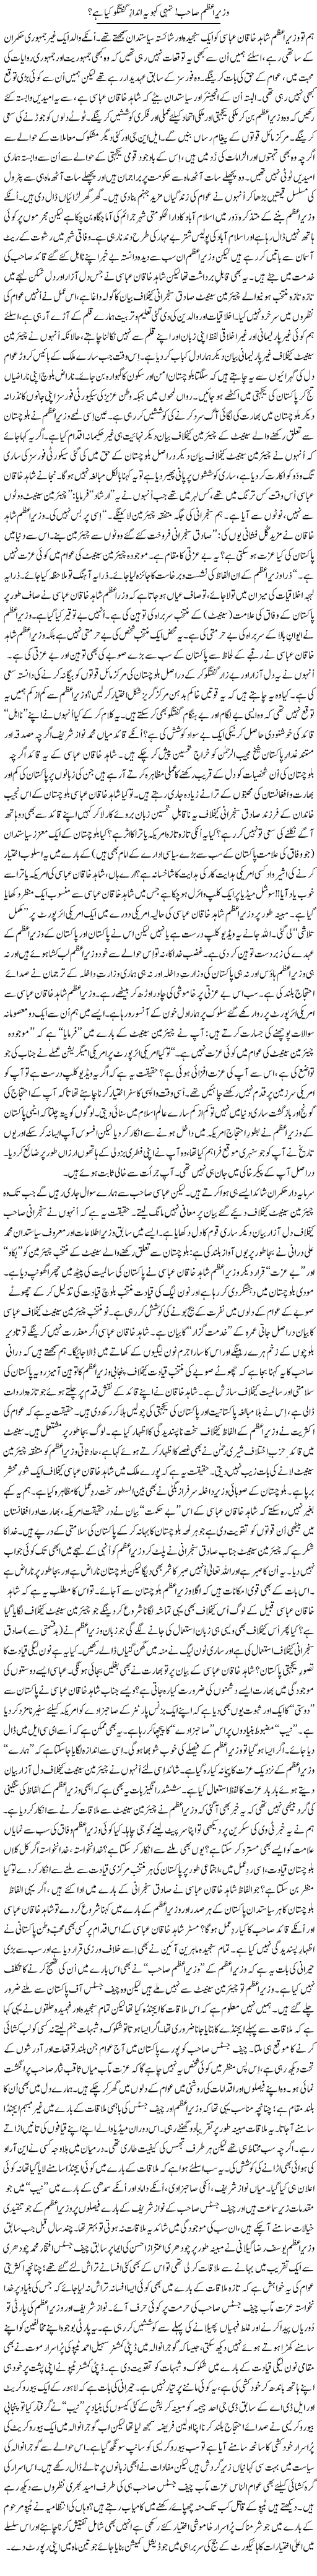 Wazir e Azam Sahib, Tumhi Kaho Ye Andaz Guftagu Kya Hai | Rehmat Ali Razi | Daily Urdu Columns